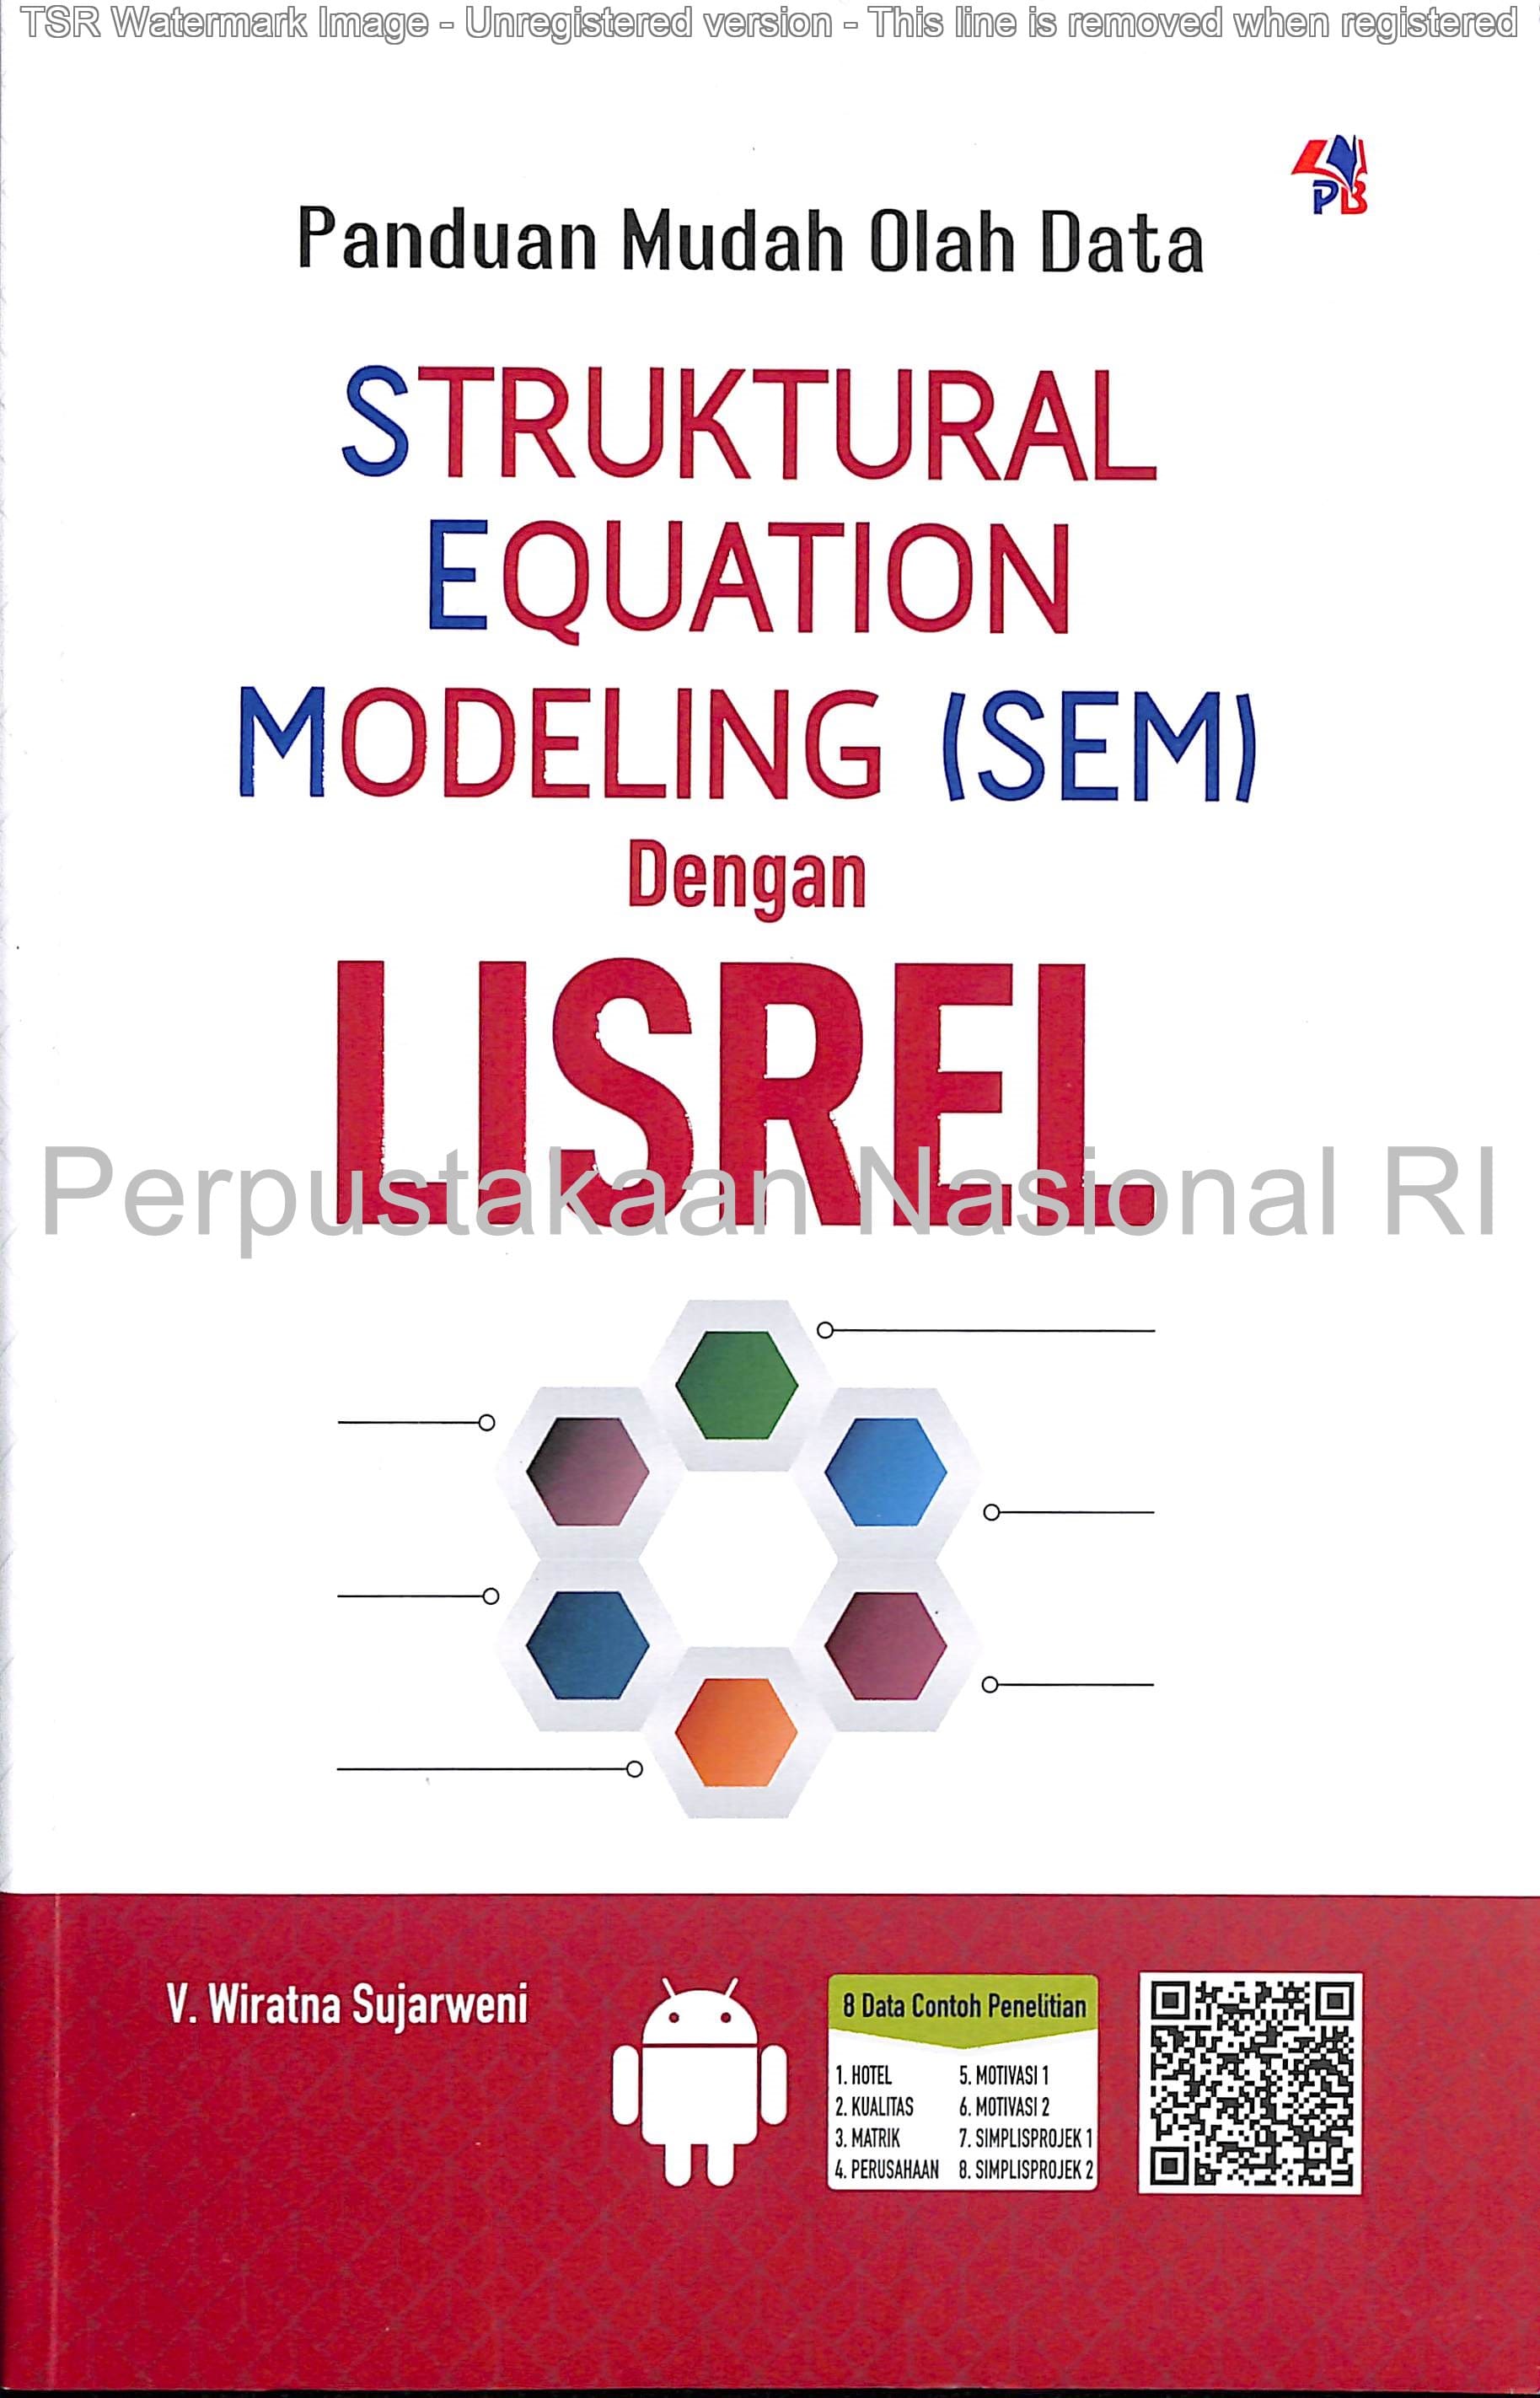 Panduan mudah olah data struktural, equation, modeling (SEM) dengan lisrel